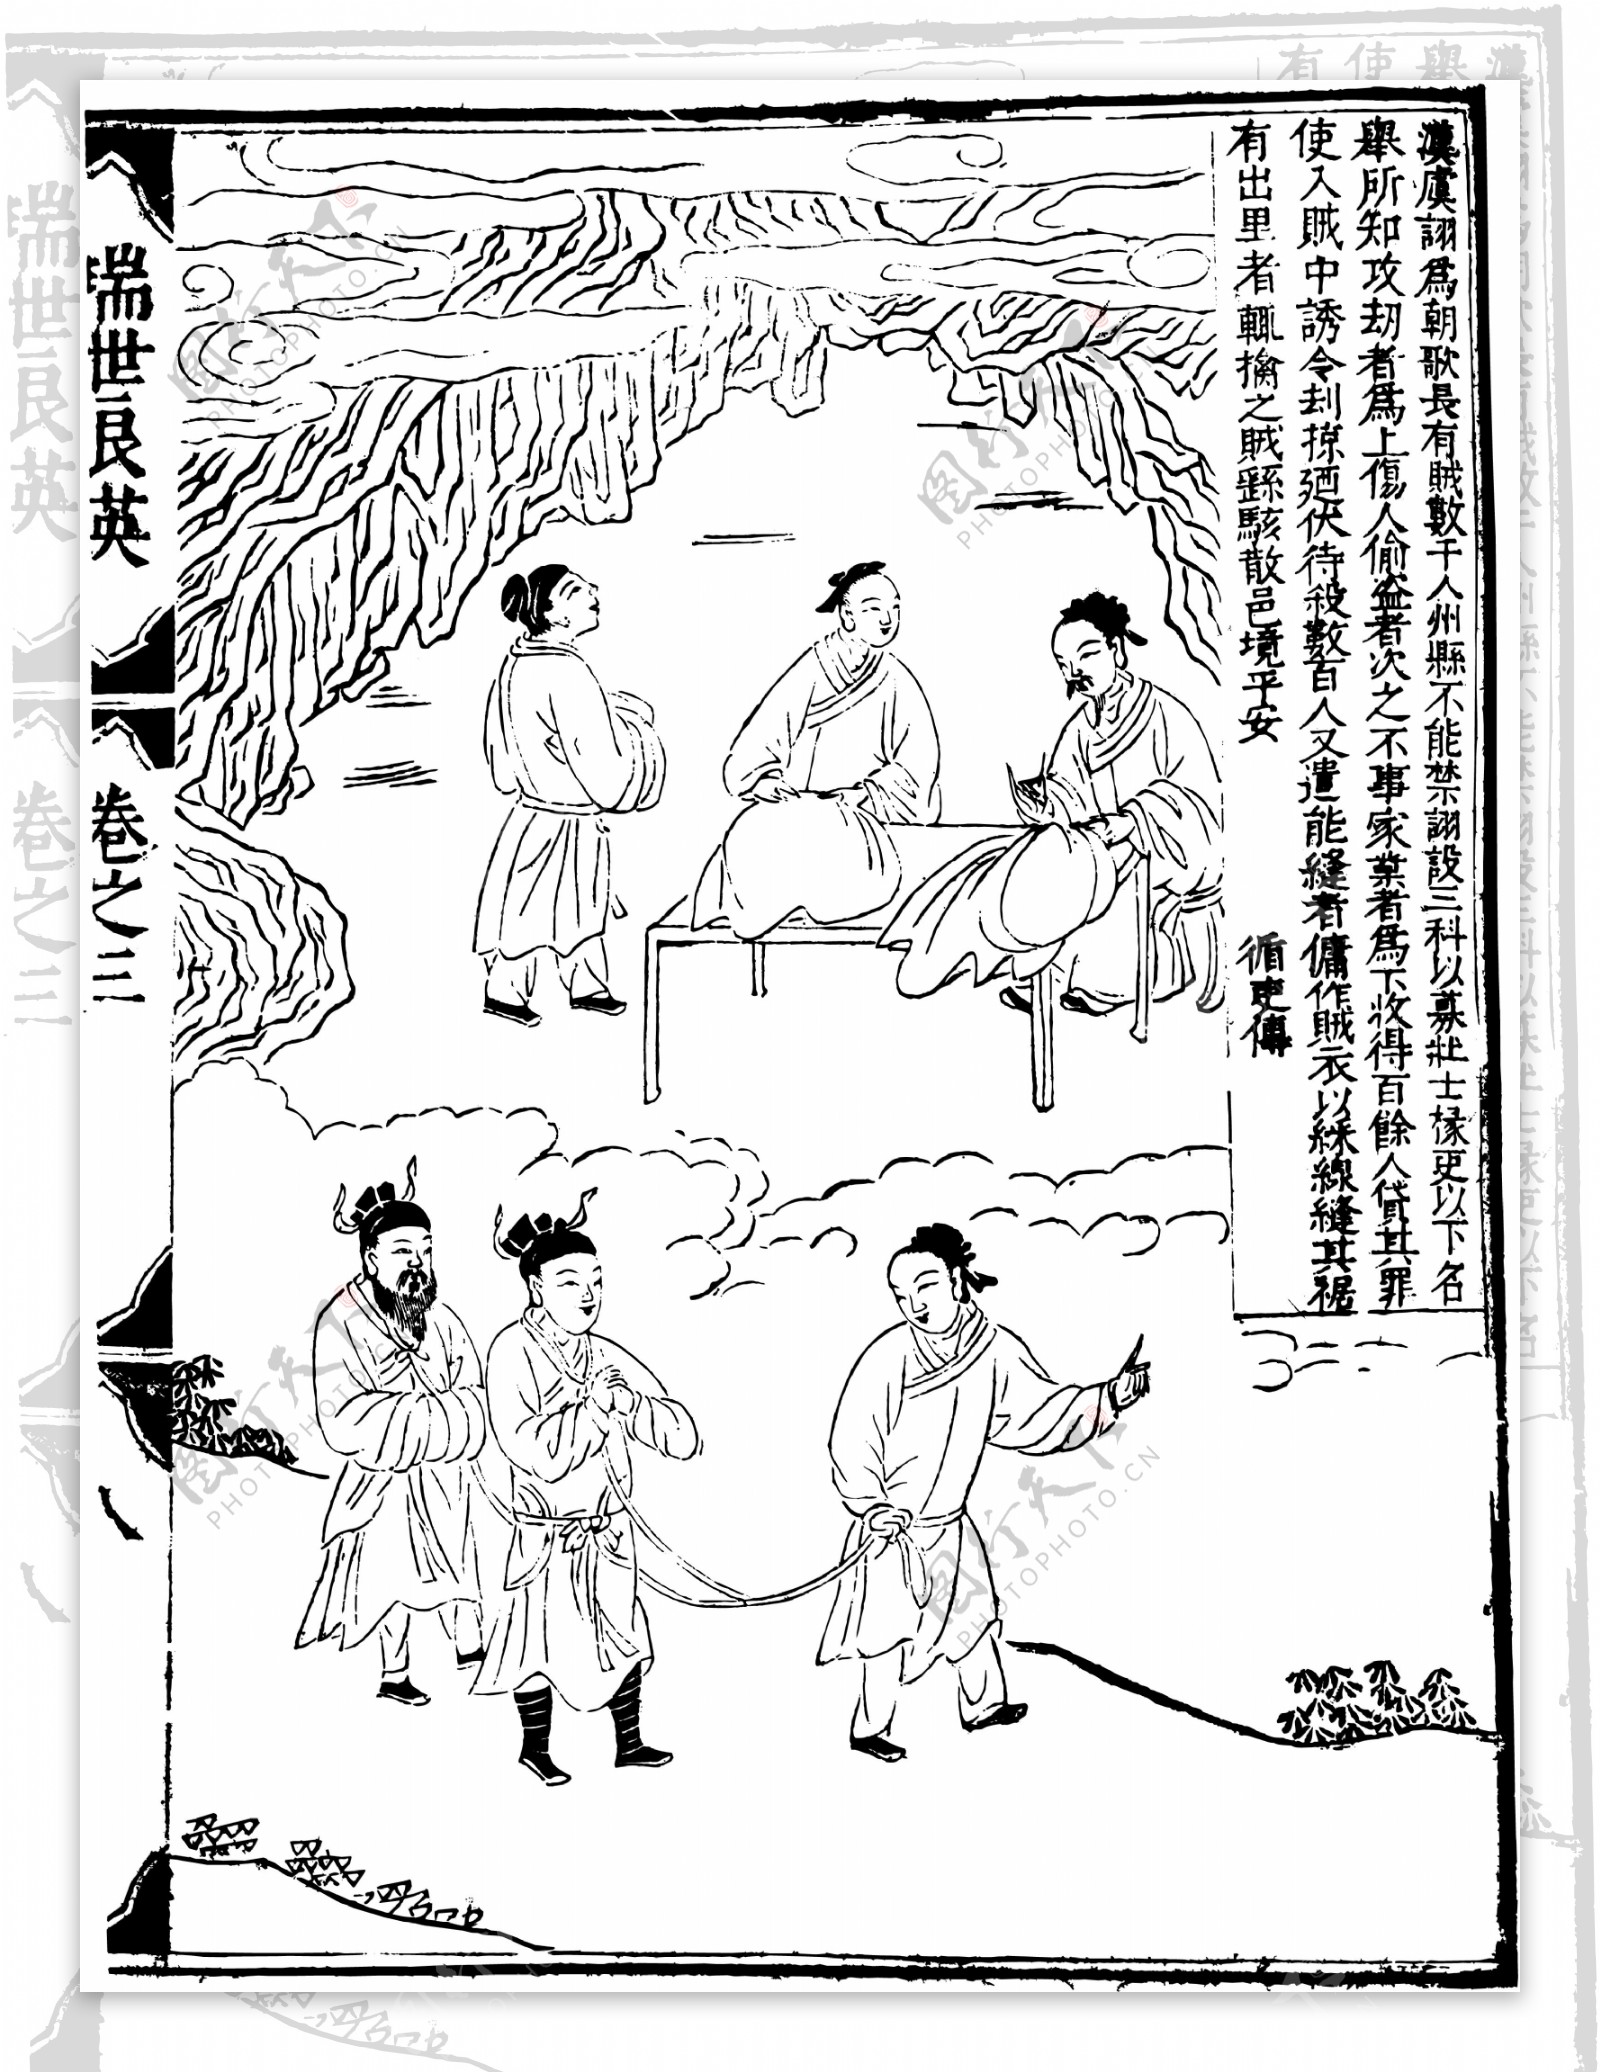 瑞世良英木刻版画中国传统文化47